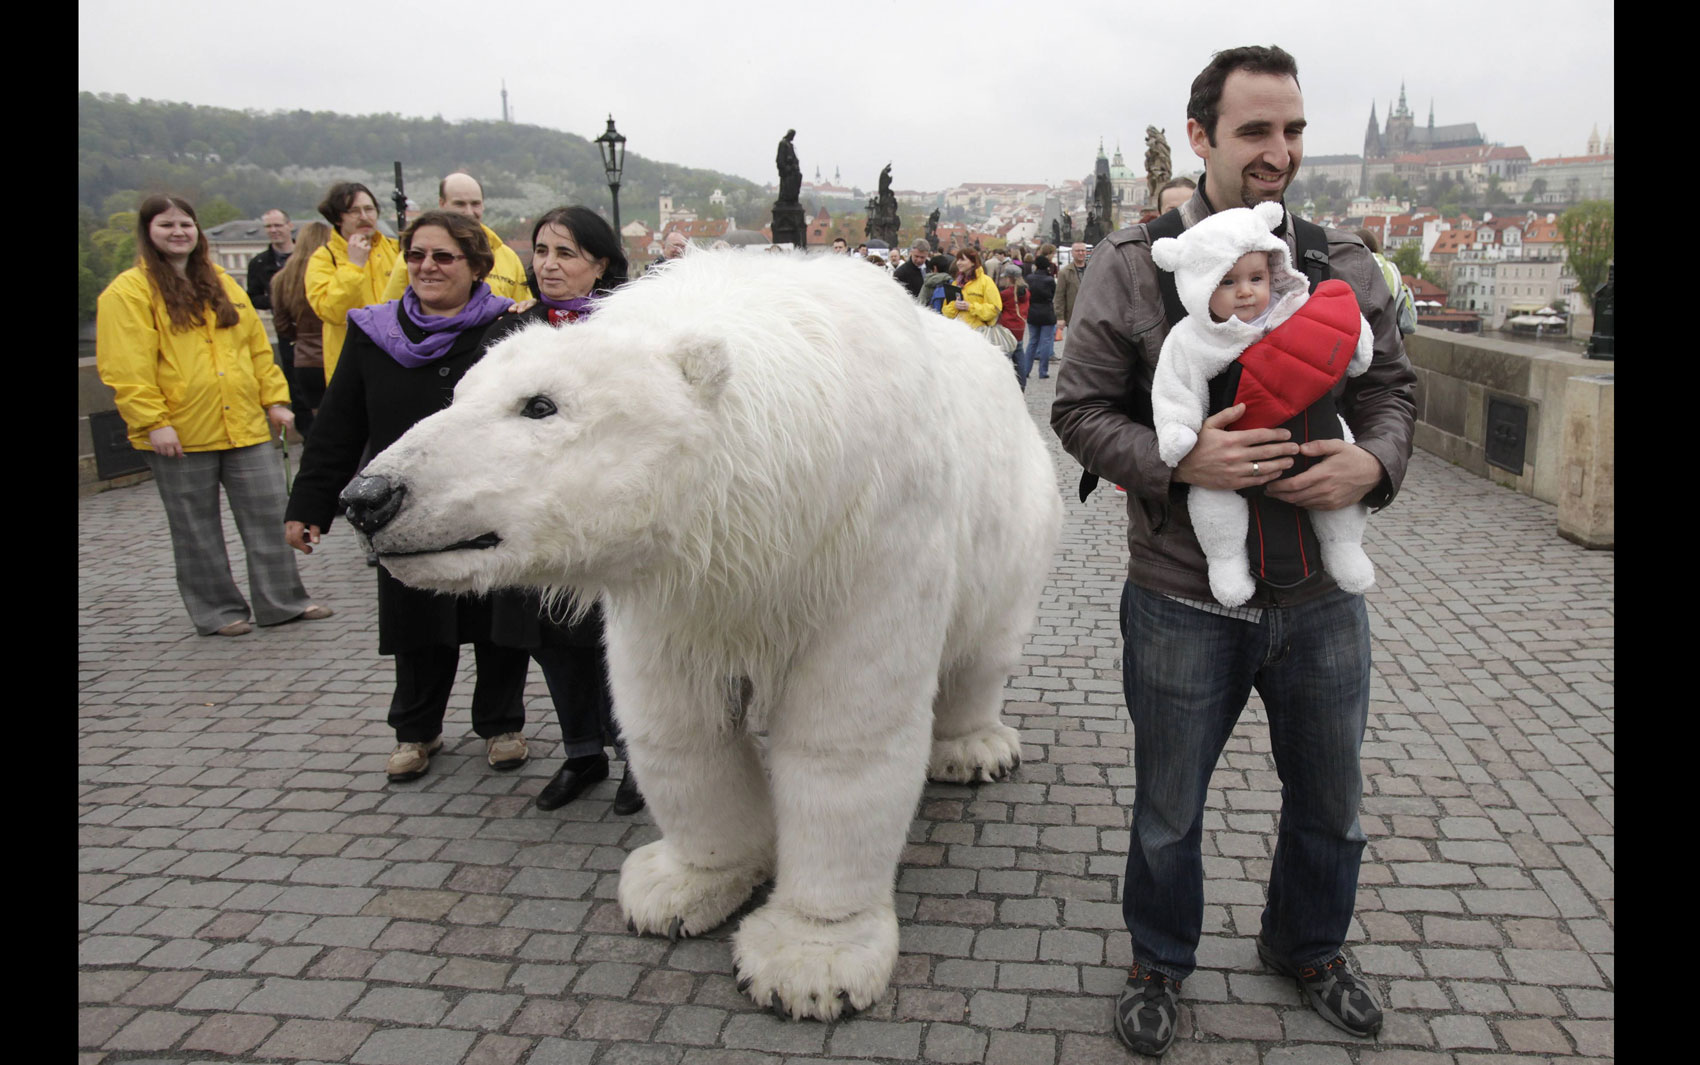 Ativistas do Greenpeace usam uma fantasia de urso polar em tamanho real e também usaram um bebê fantasiado como ursinho para em Praga, na República Tcheca. A campanha é para chamar a atenção para ameaças ambientais ao Ártico.